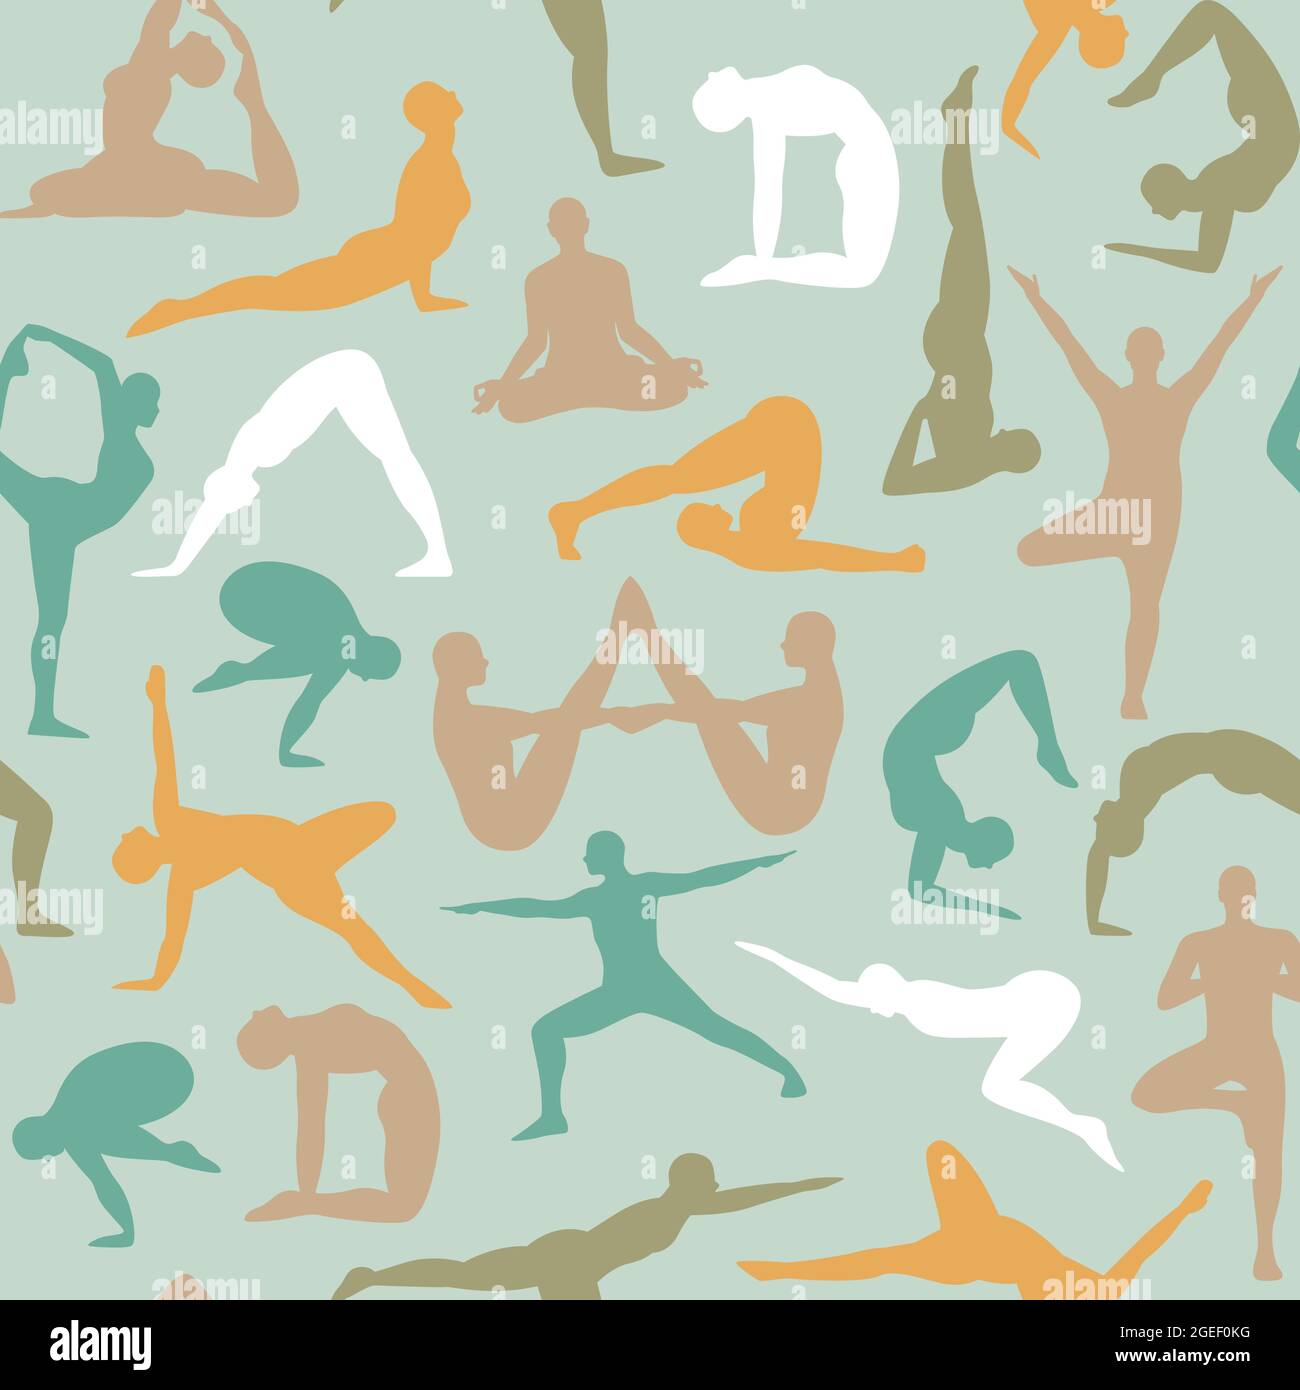 Illustration sans couture de la silhouette du corps des personnes faisant différentes poses d'exercice de yoga. Un style de vie sain avec des personnages divers medi Illustration de Vecteur